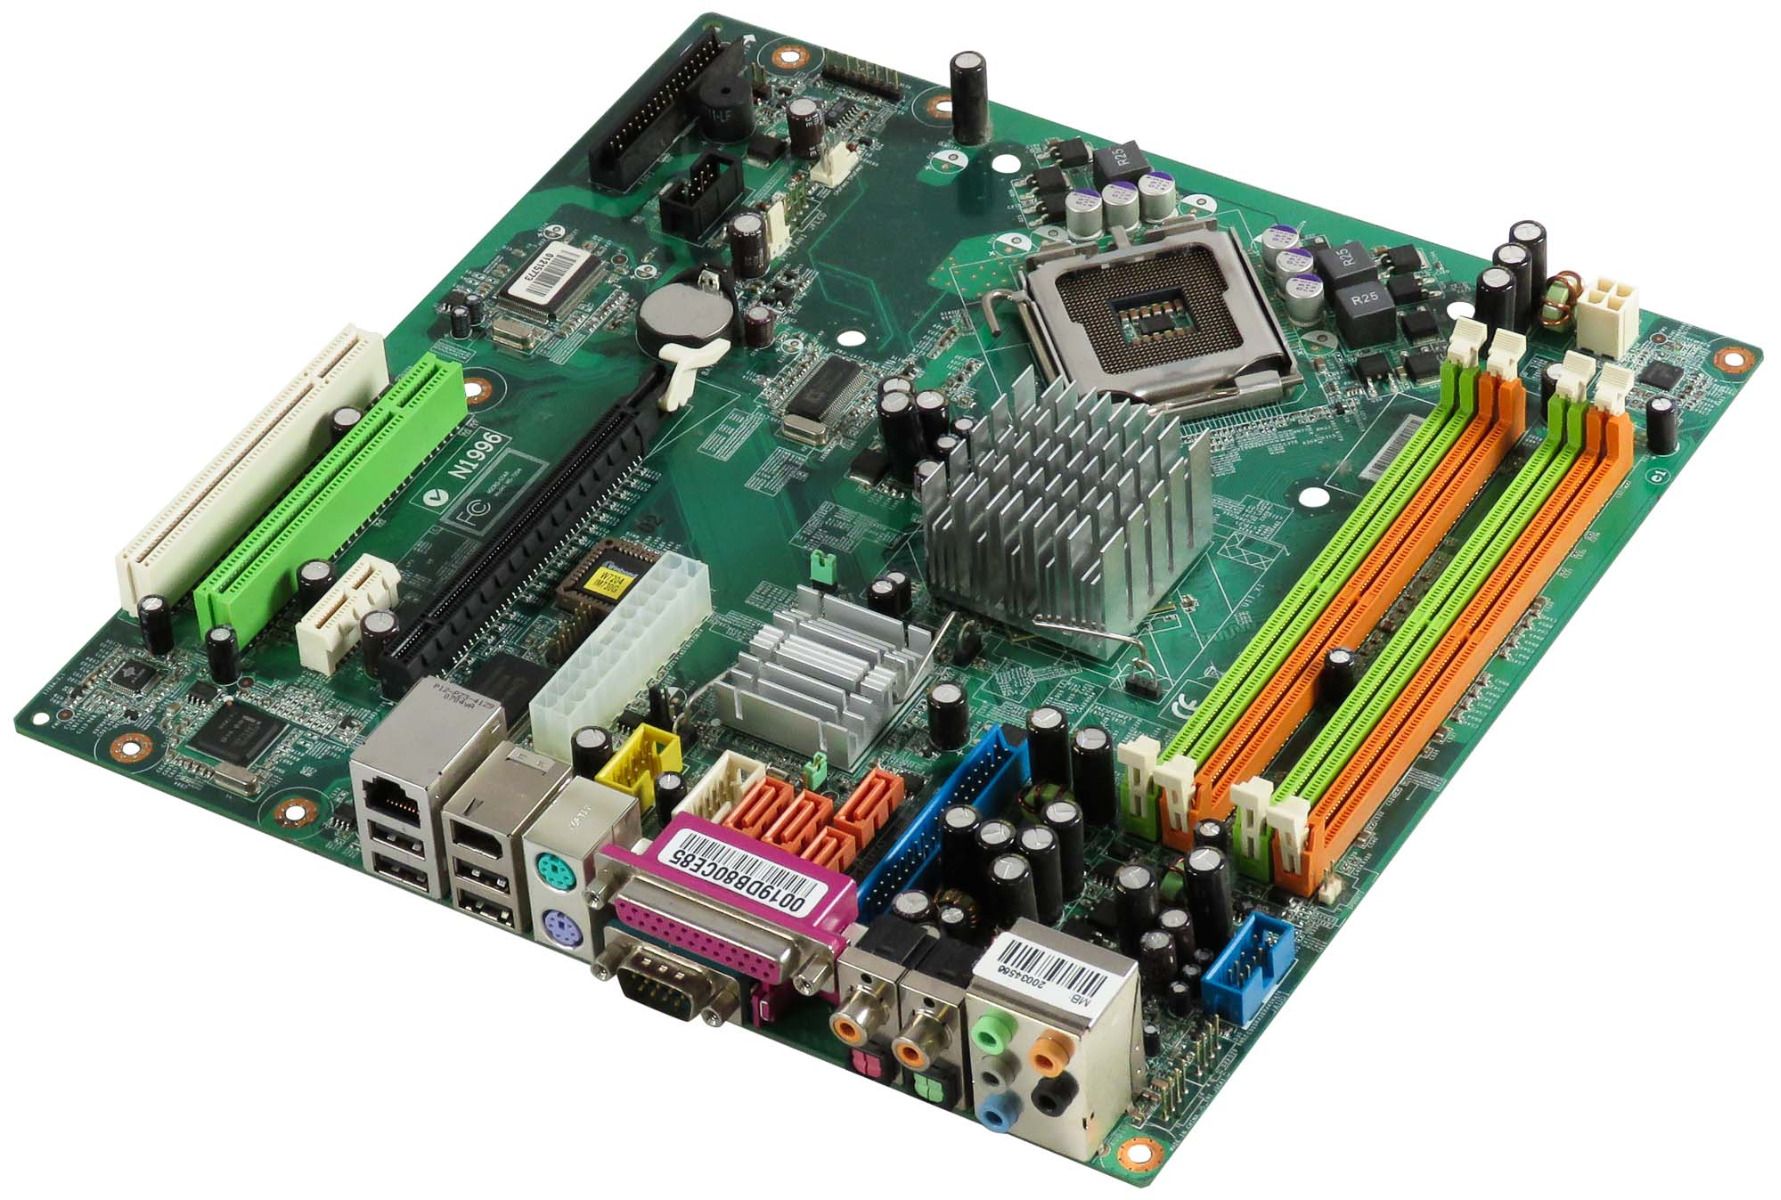 MSI MS-7204 VER:3.1 s.775 DDR2 PCIe PCI mBTX